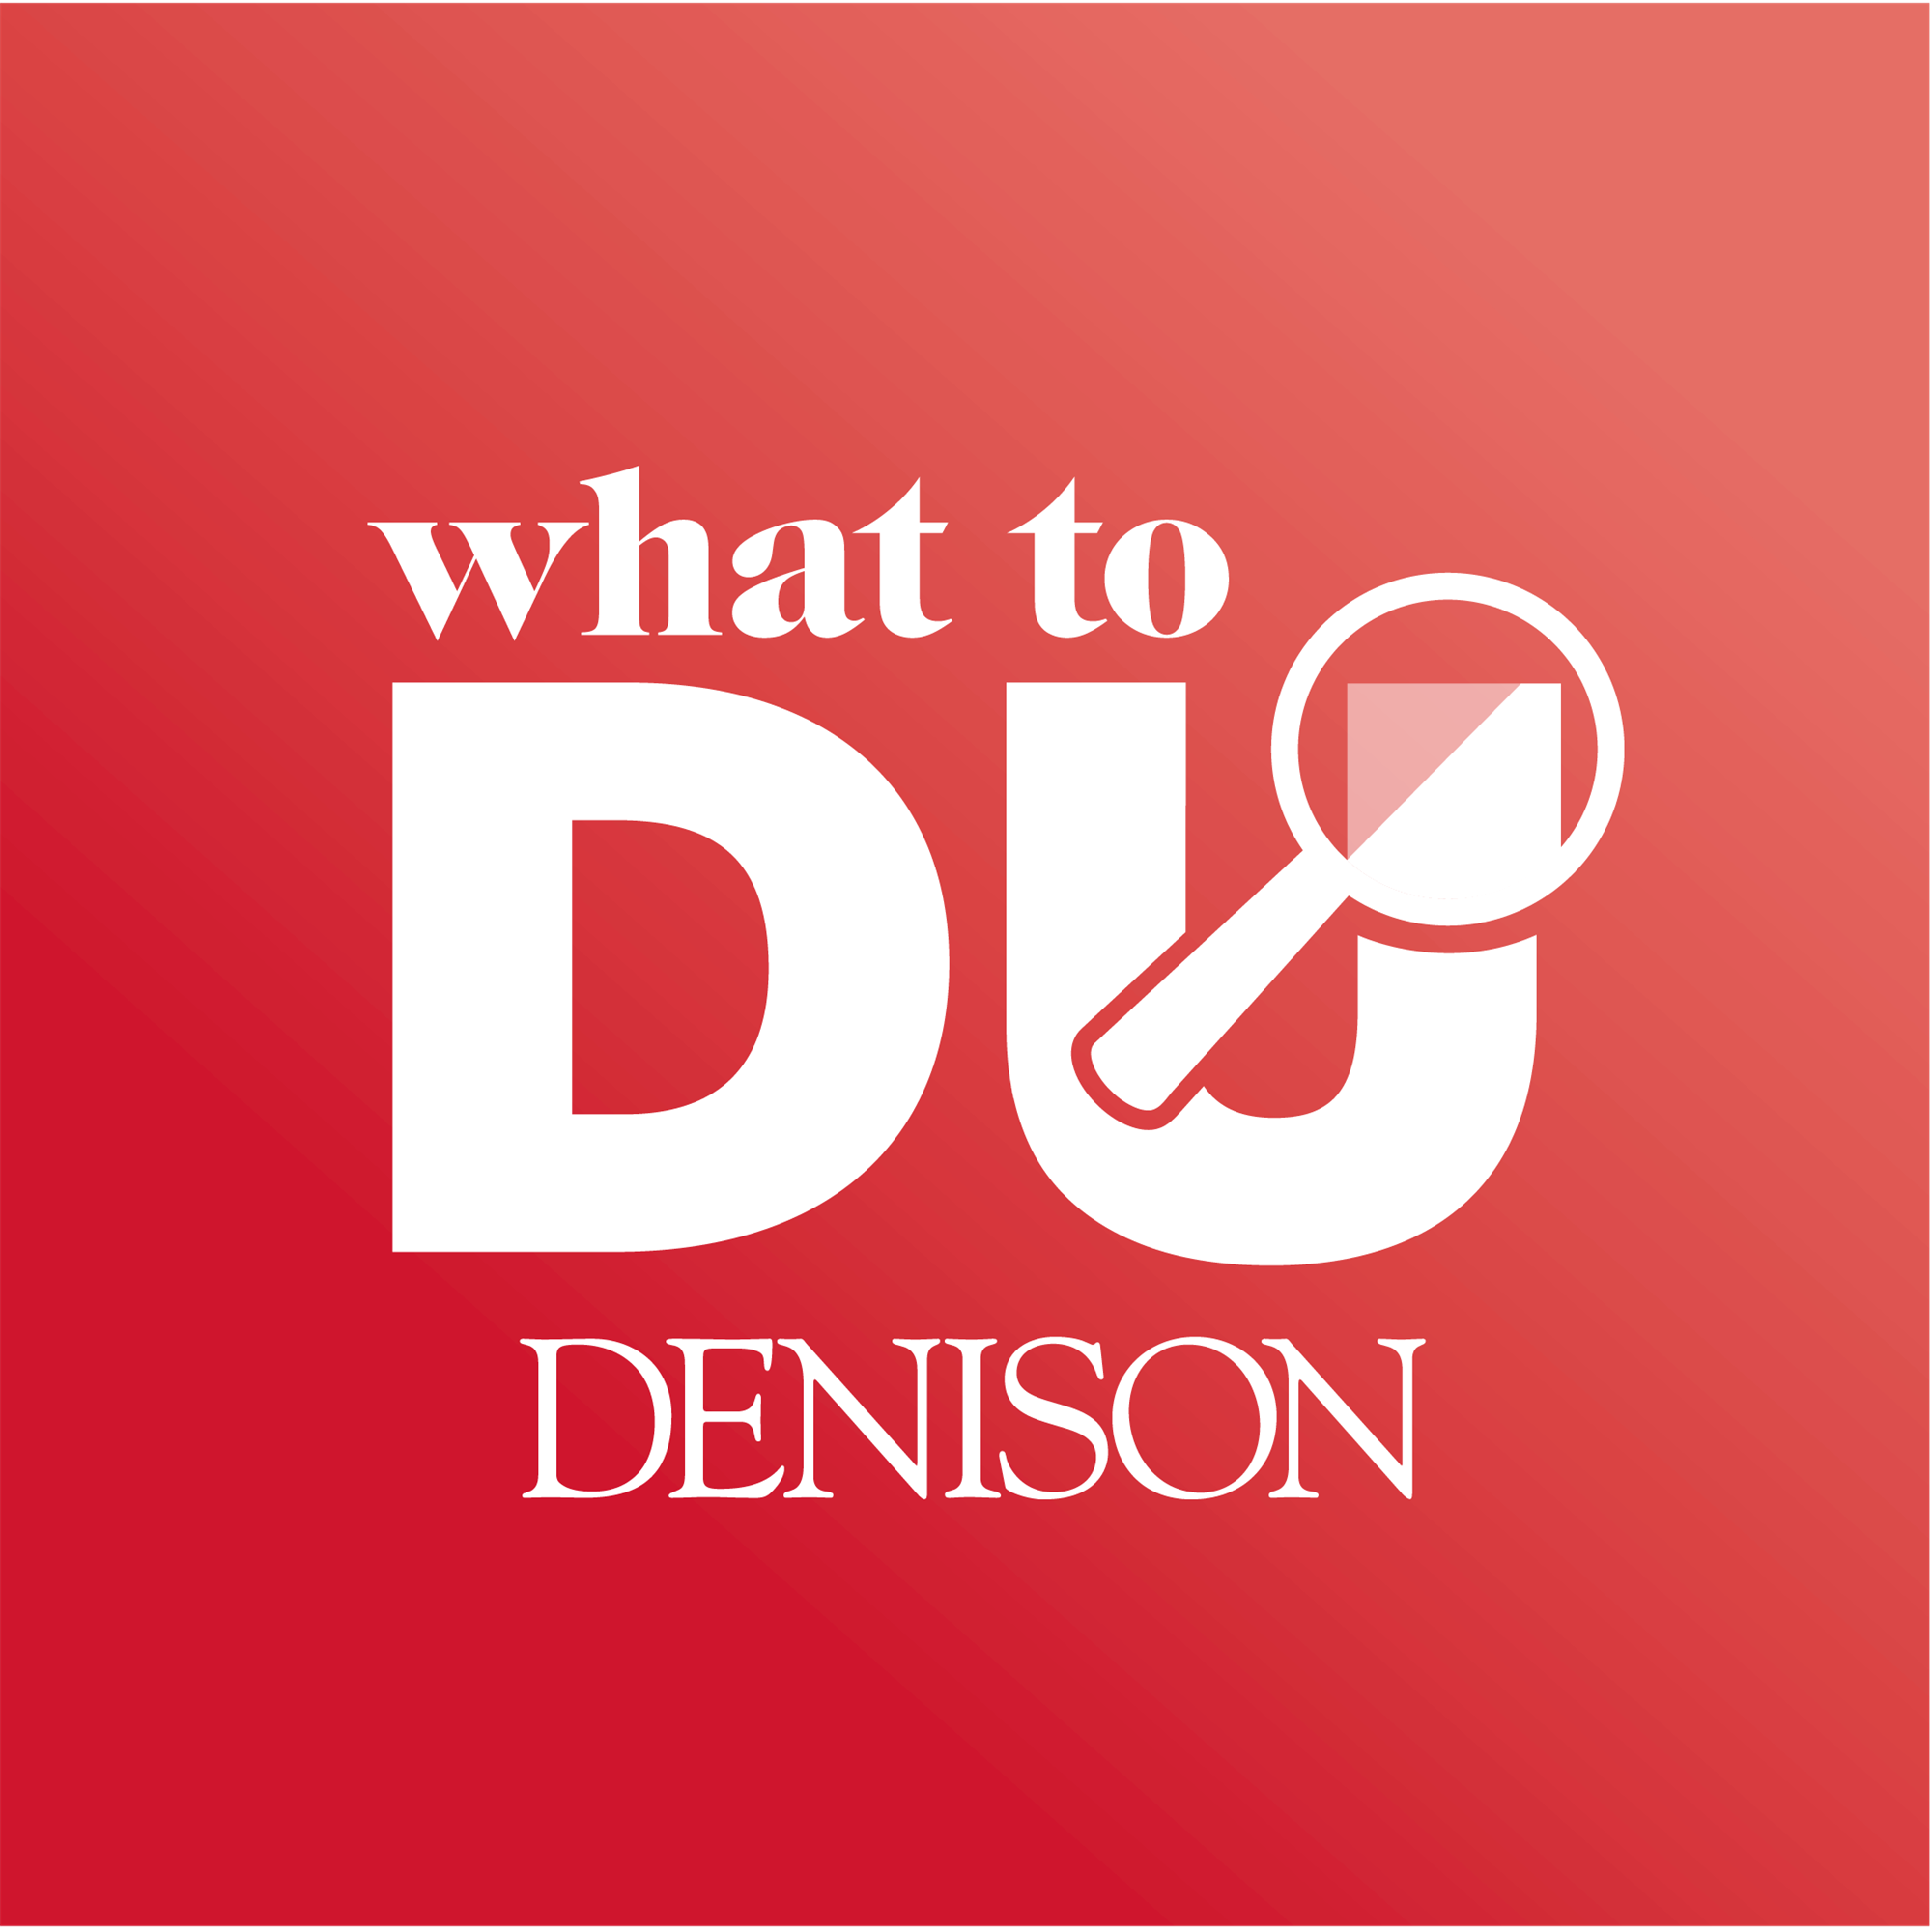 Denison University Logo Image.